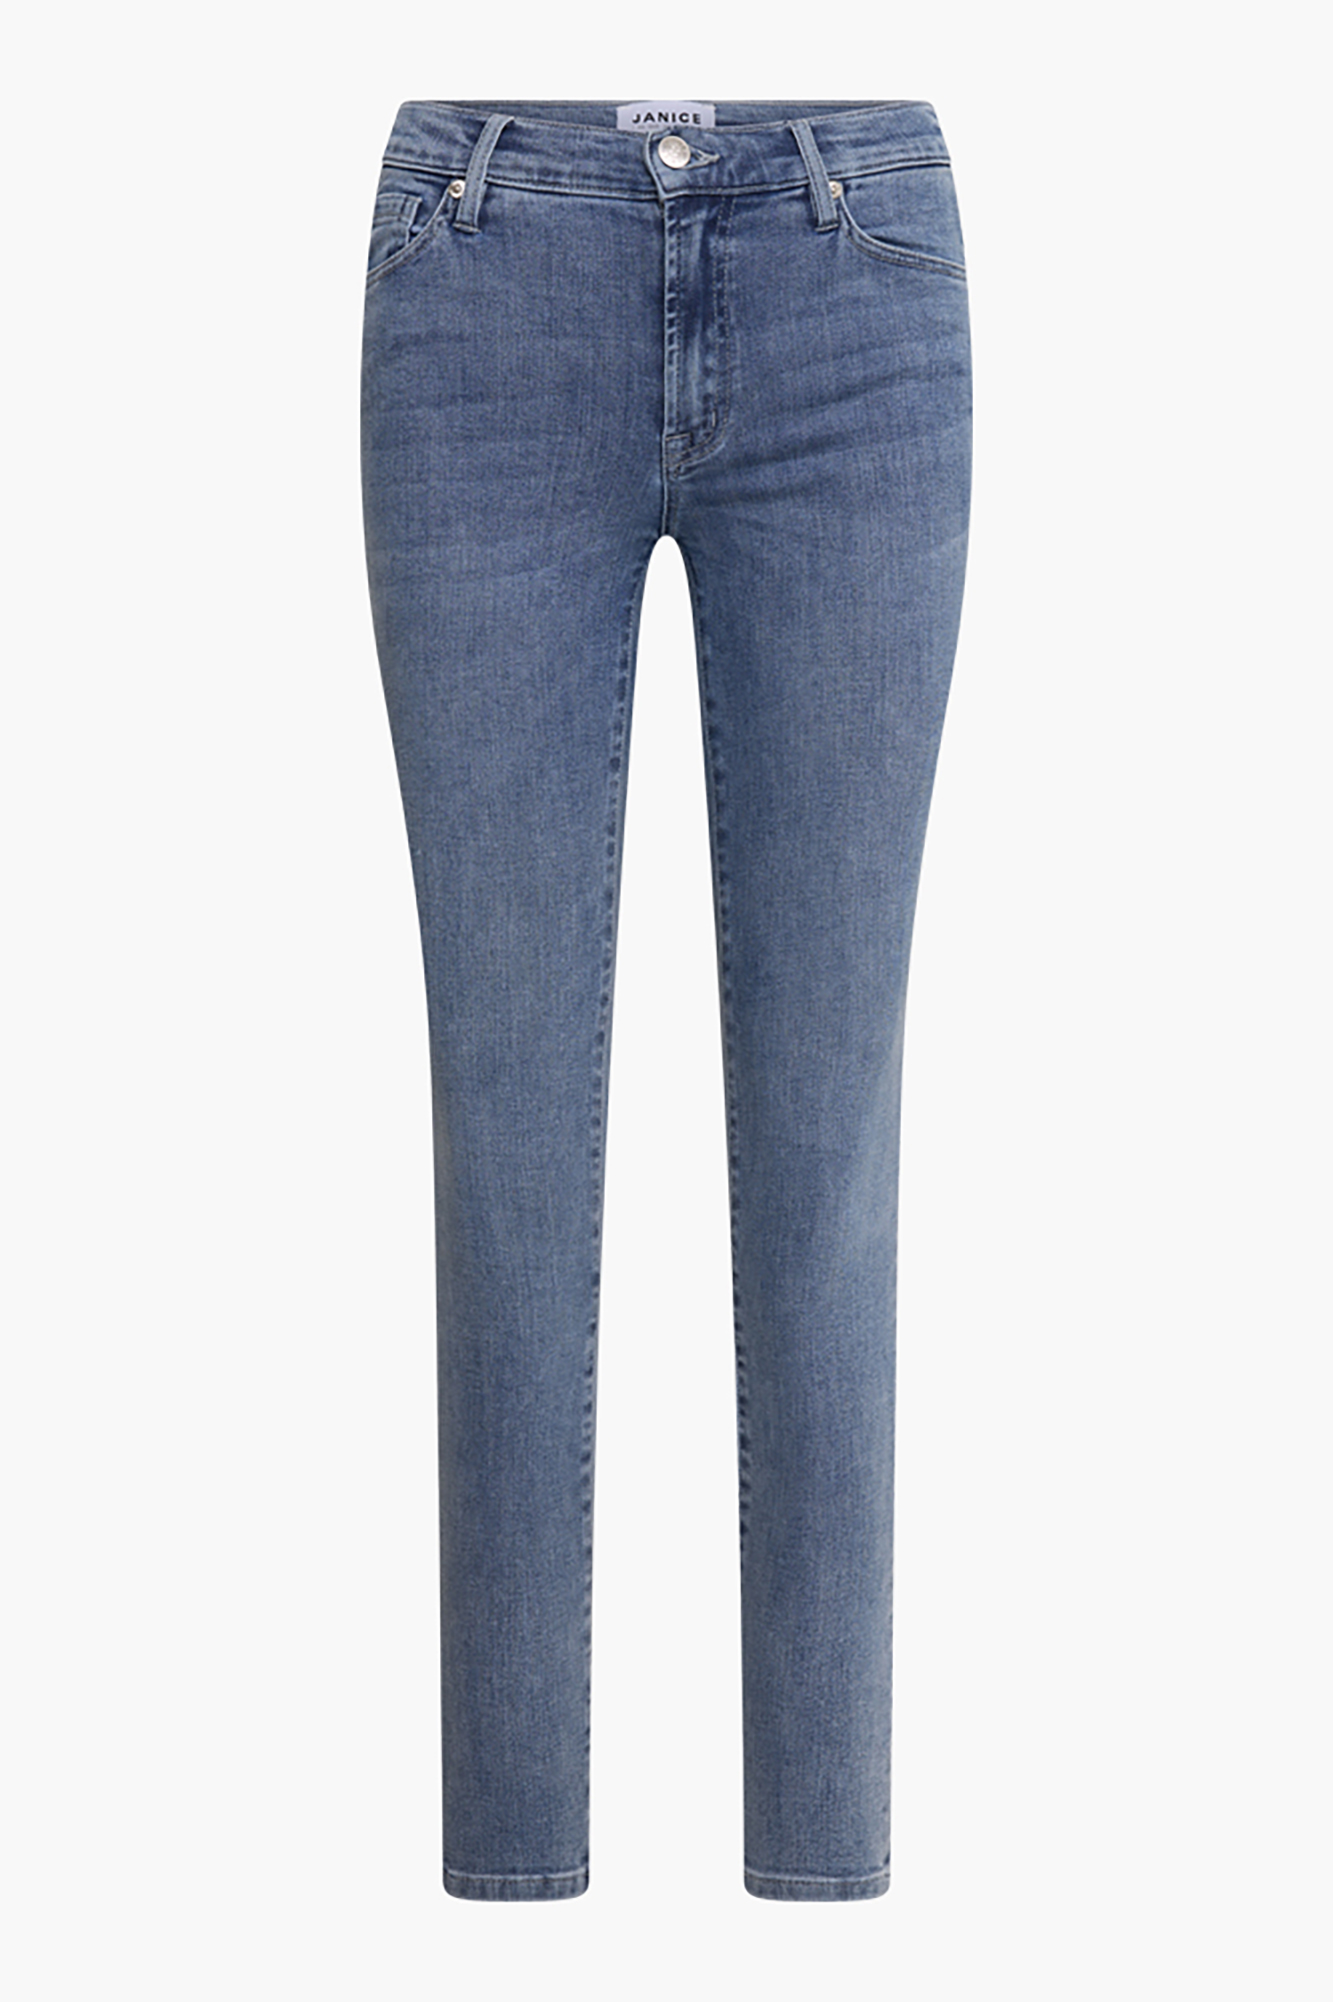 gevogelte Uitdrukking Verslaafd Blauwe Skinny Jeans James Blue 2707 | Shop je broek bij JANICE